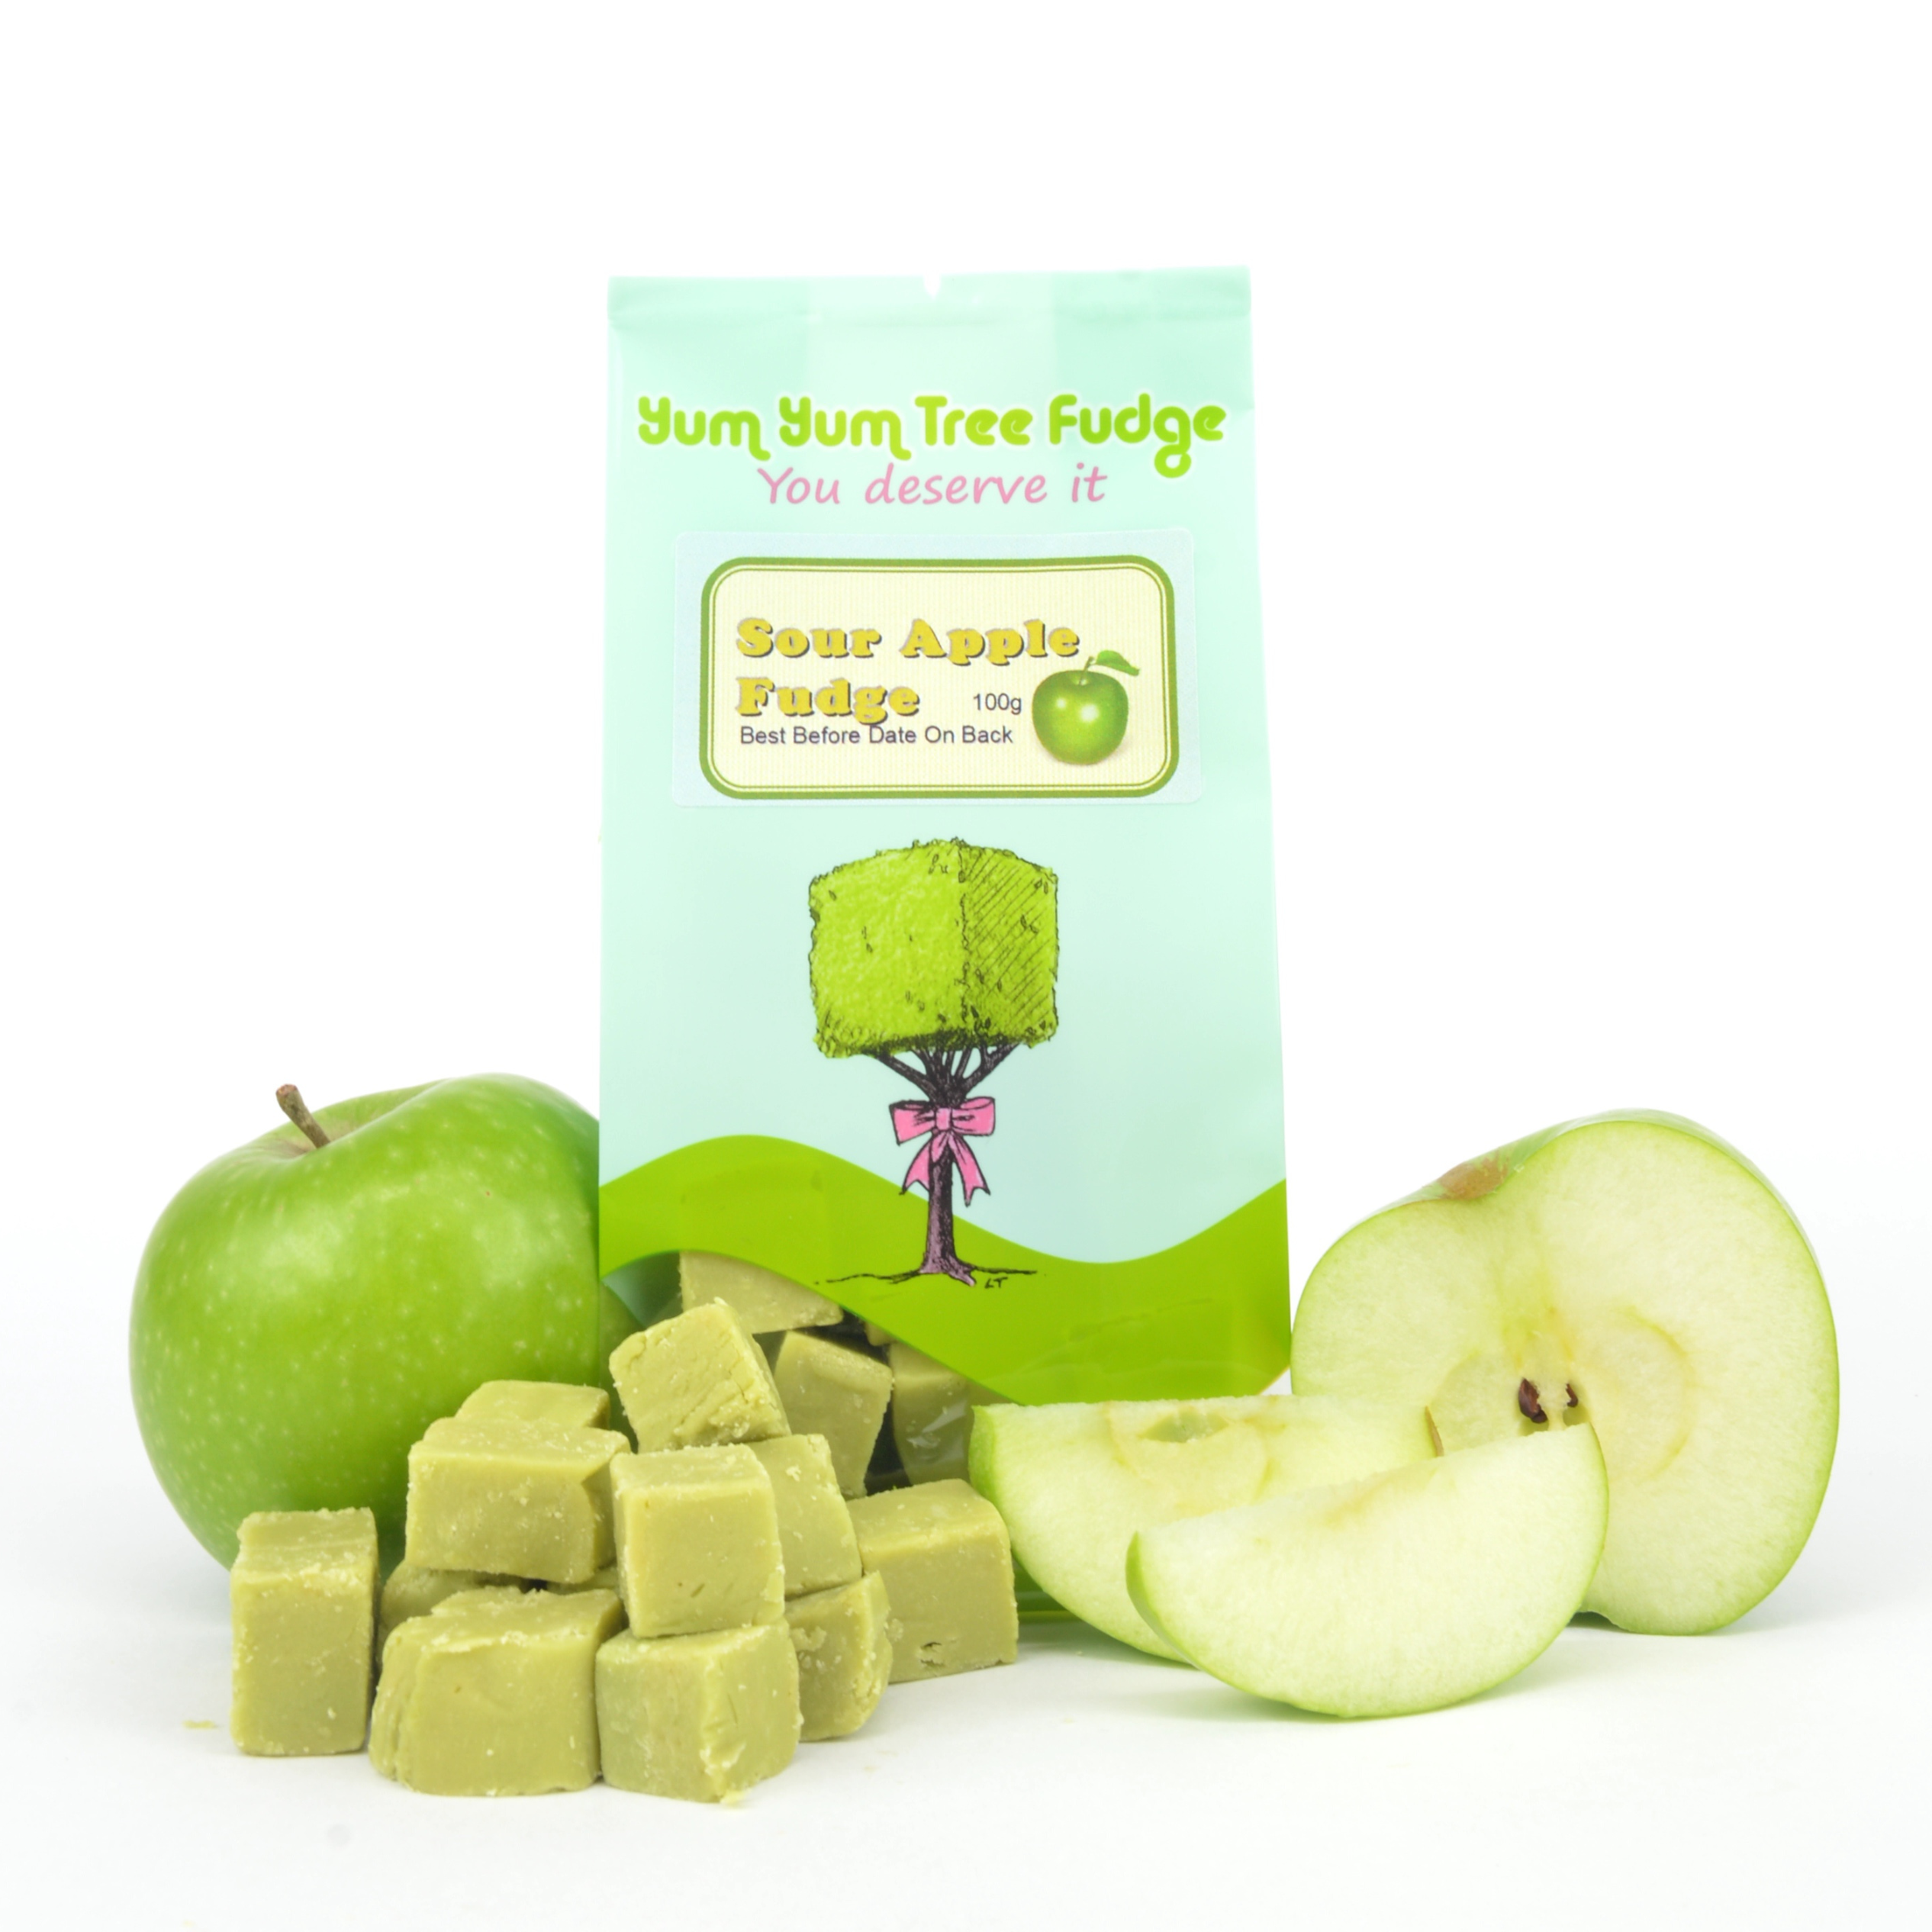 Sour Apple Fudge by Yum Yum Tree Fudge